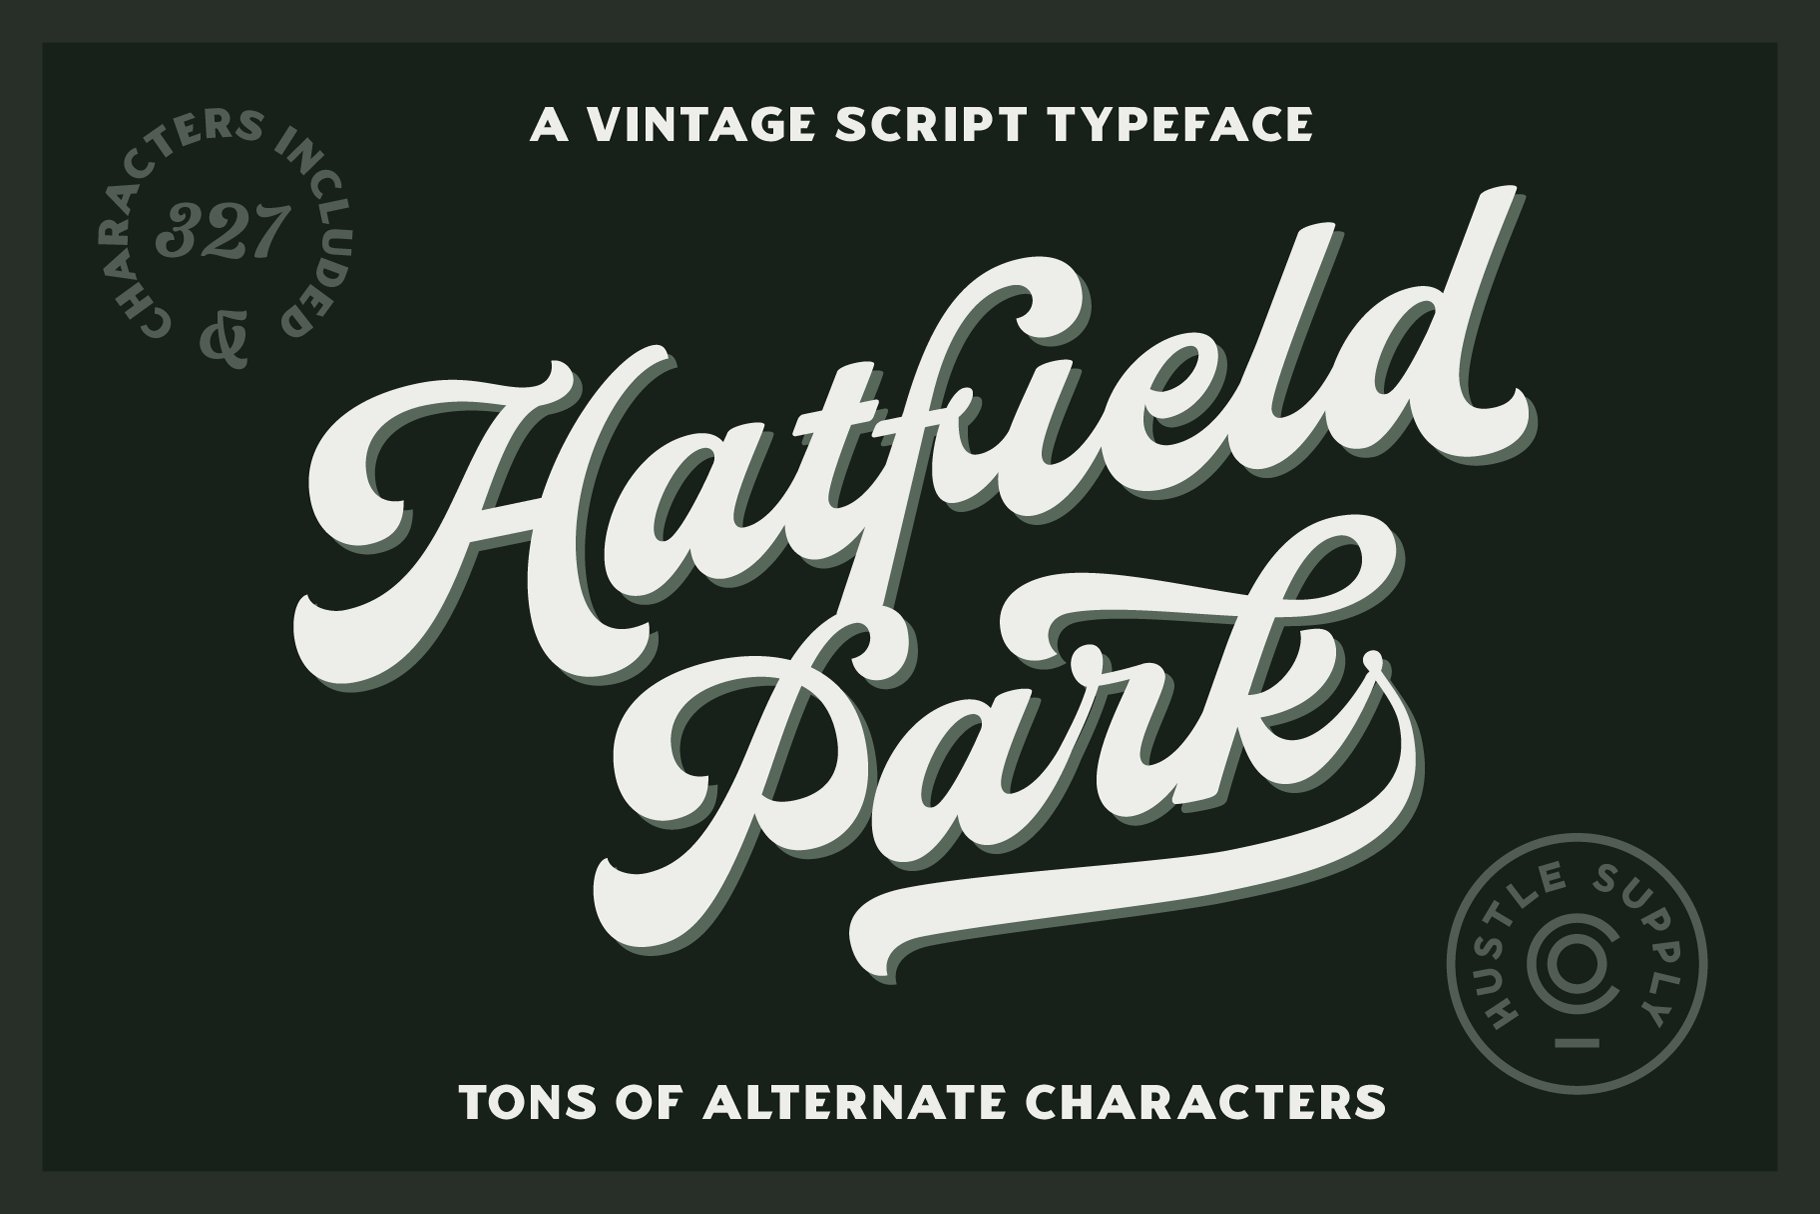 Hatfield Park - Vintage Script Font cover image.